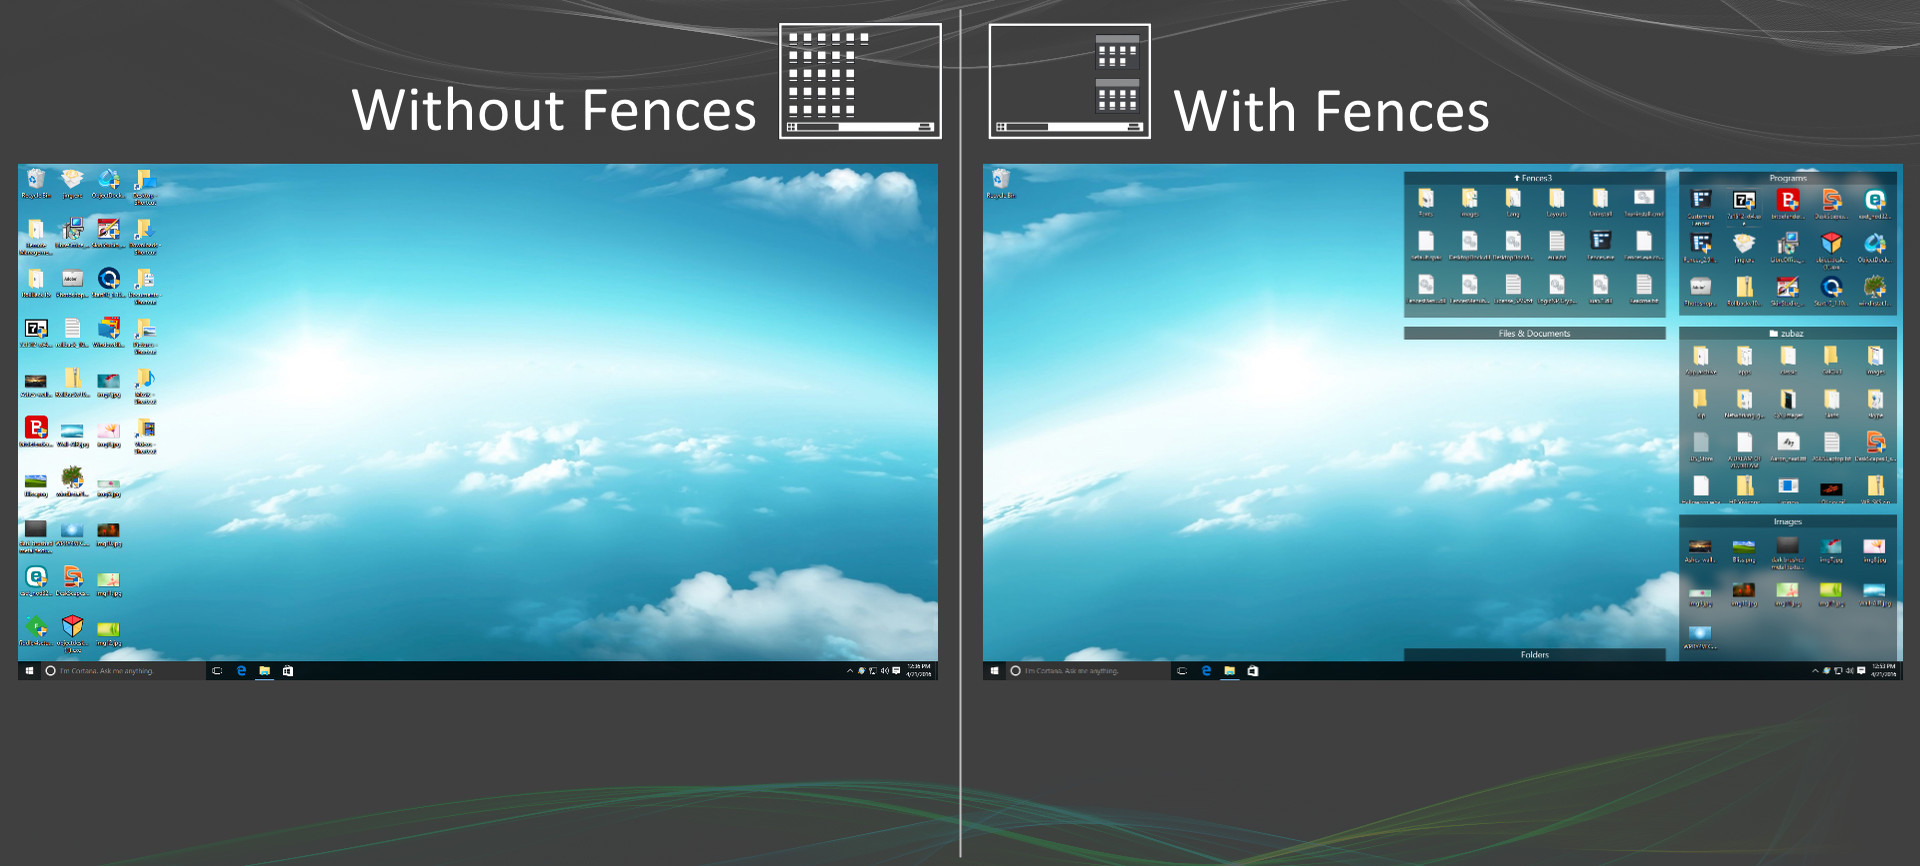 桌面整理软件Stardock Fences 3.0.9 for Win破解版下载插图